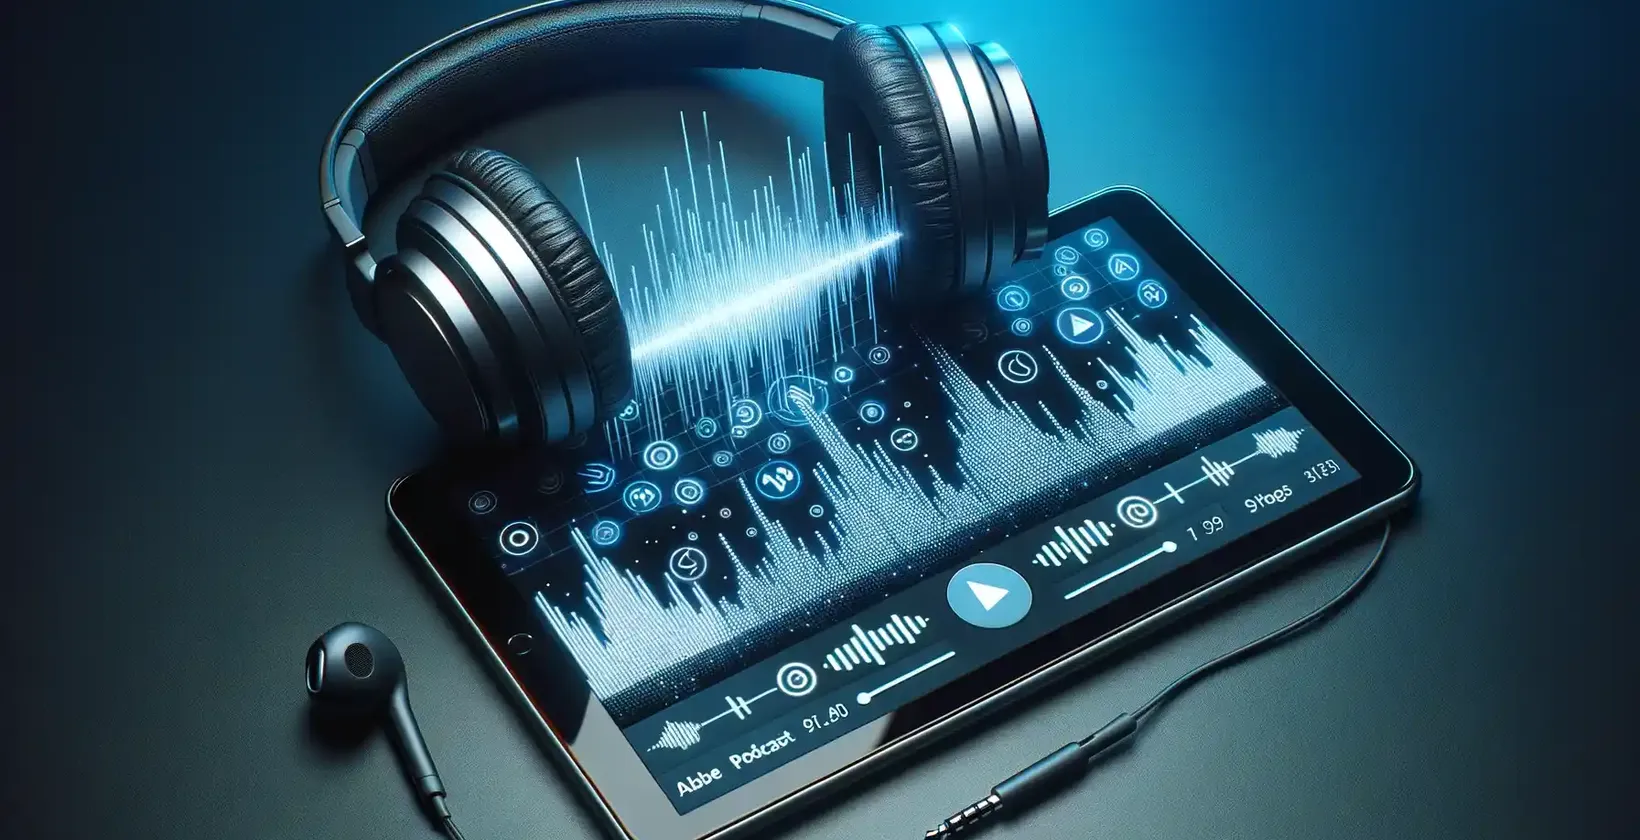 La pantalla de la tableta muestra de forma vibrante ondas sonoras, botones digitales y ajustes sobre un fondo azul intenso